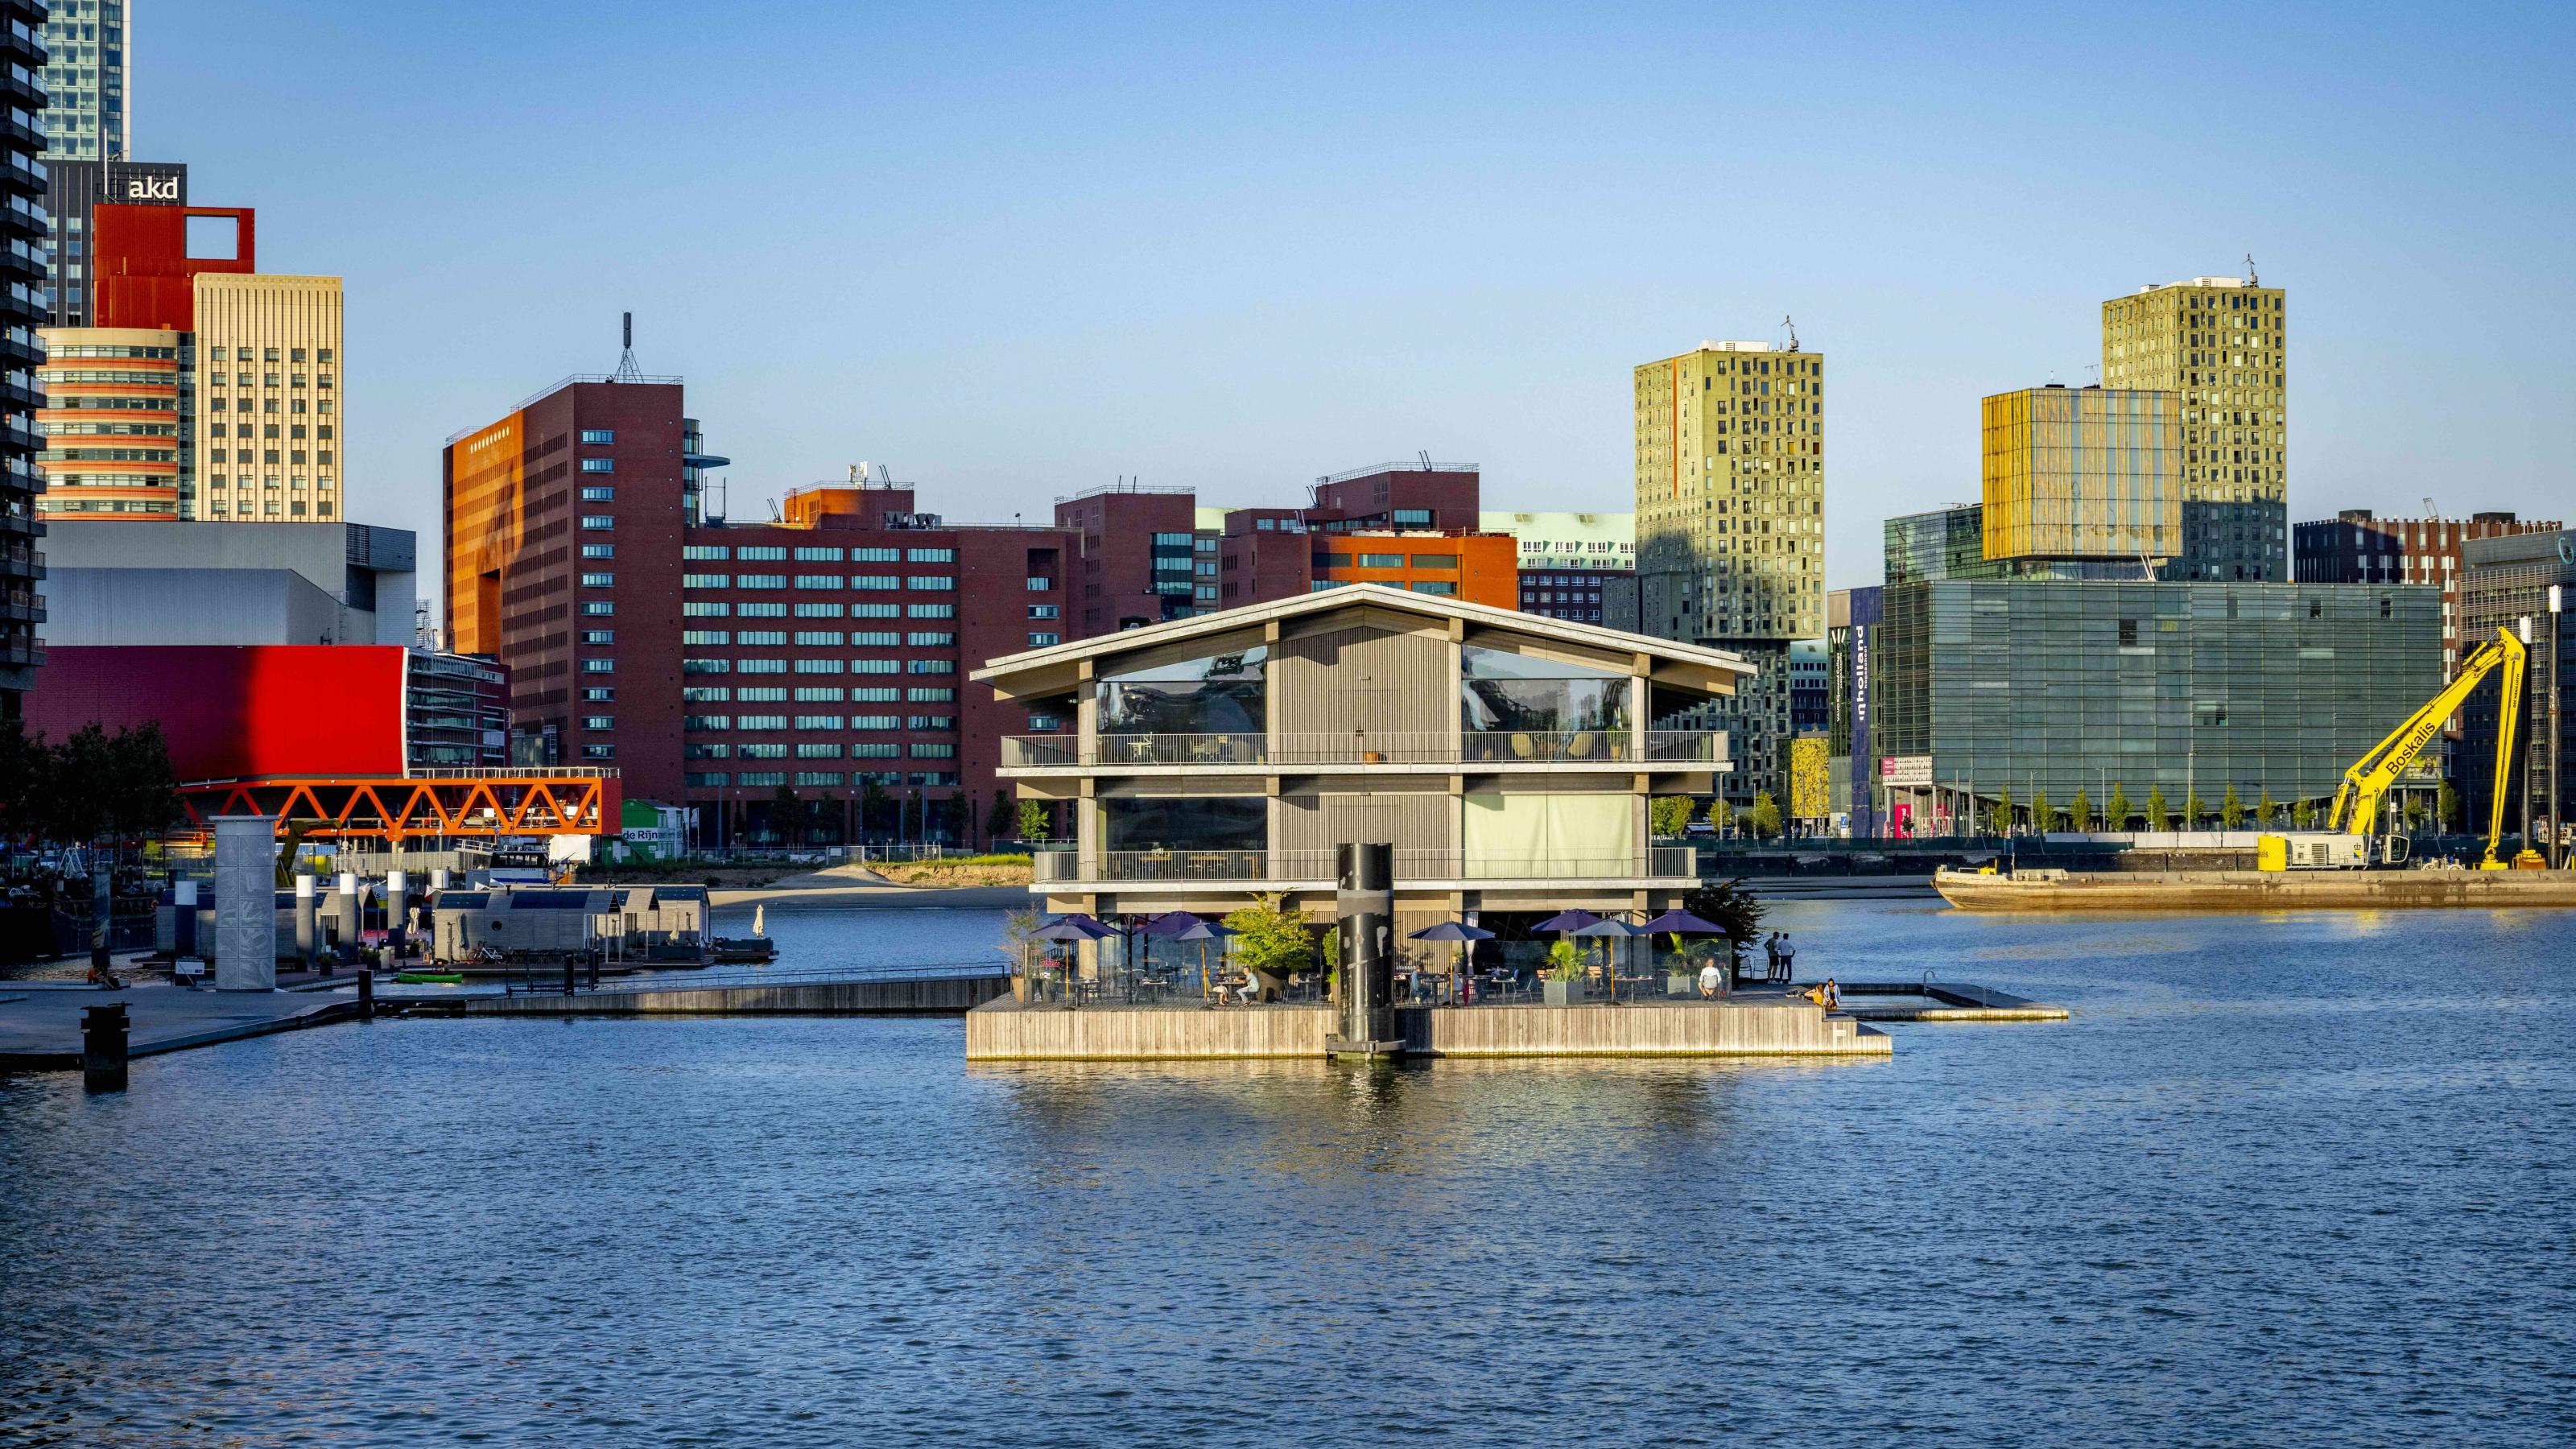 Hochhäuser umgeben ein mehrstöckiges Gebäude mit Cafés, das in einem Hafenbecken schwimmt: Es ist das größte im Wasser treibende Bürogebäude der Welt.